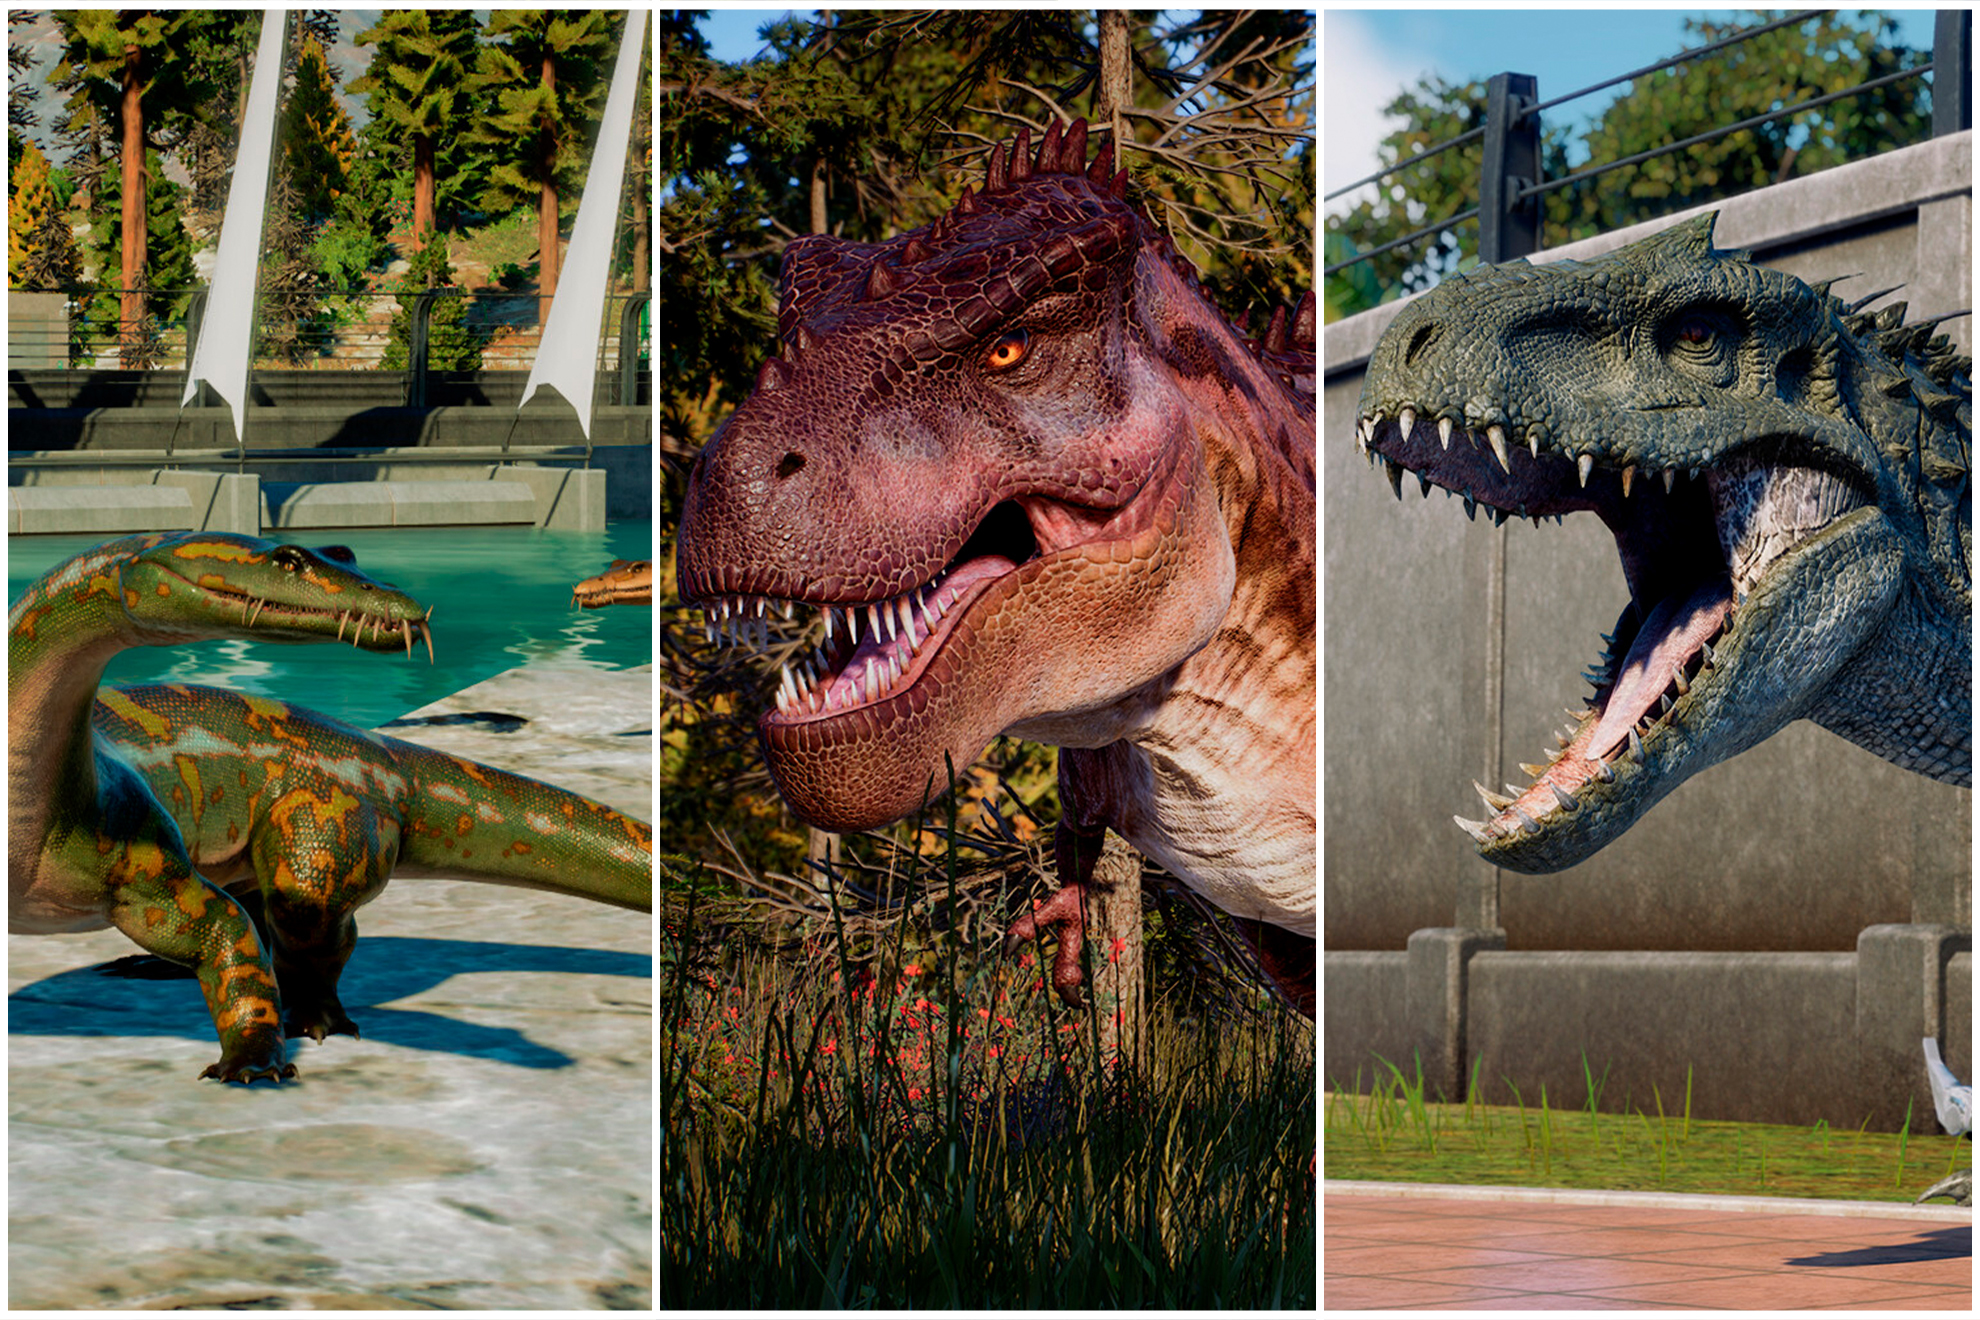 Sabais que existe un juego en el que puedes tener tu propio parque jursico? As es Jurassic World Evolution 2